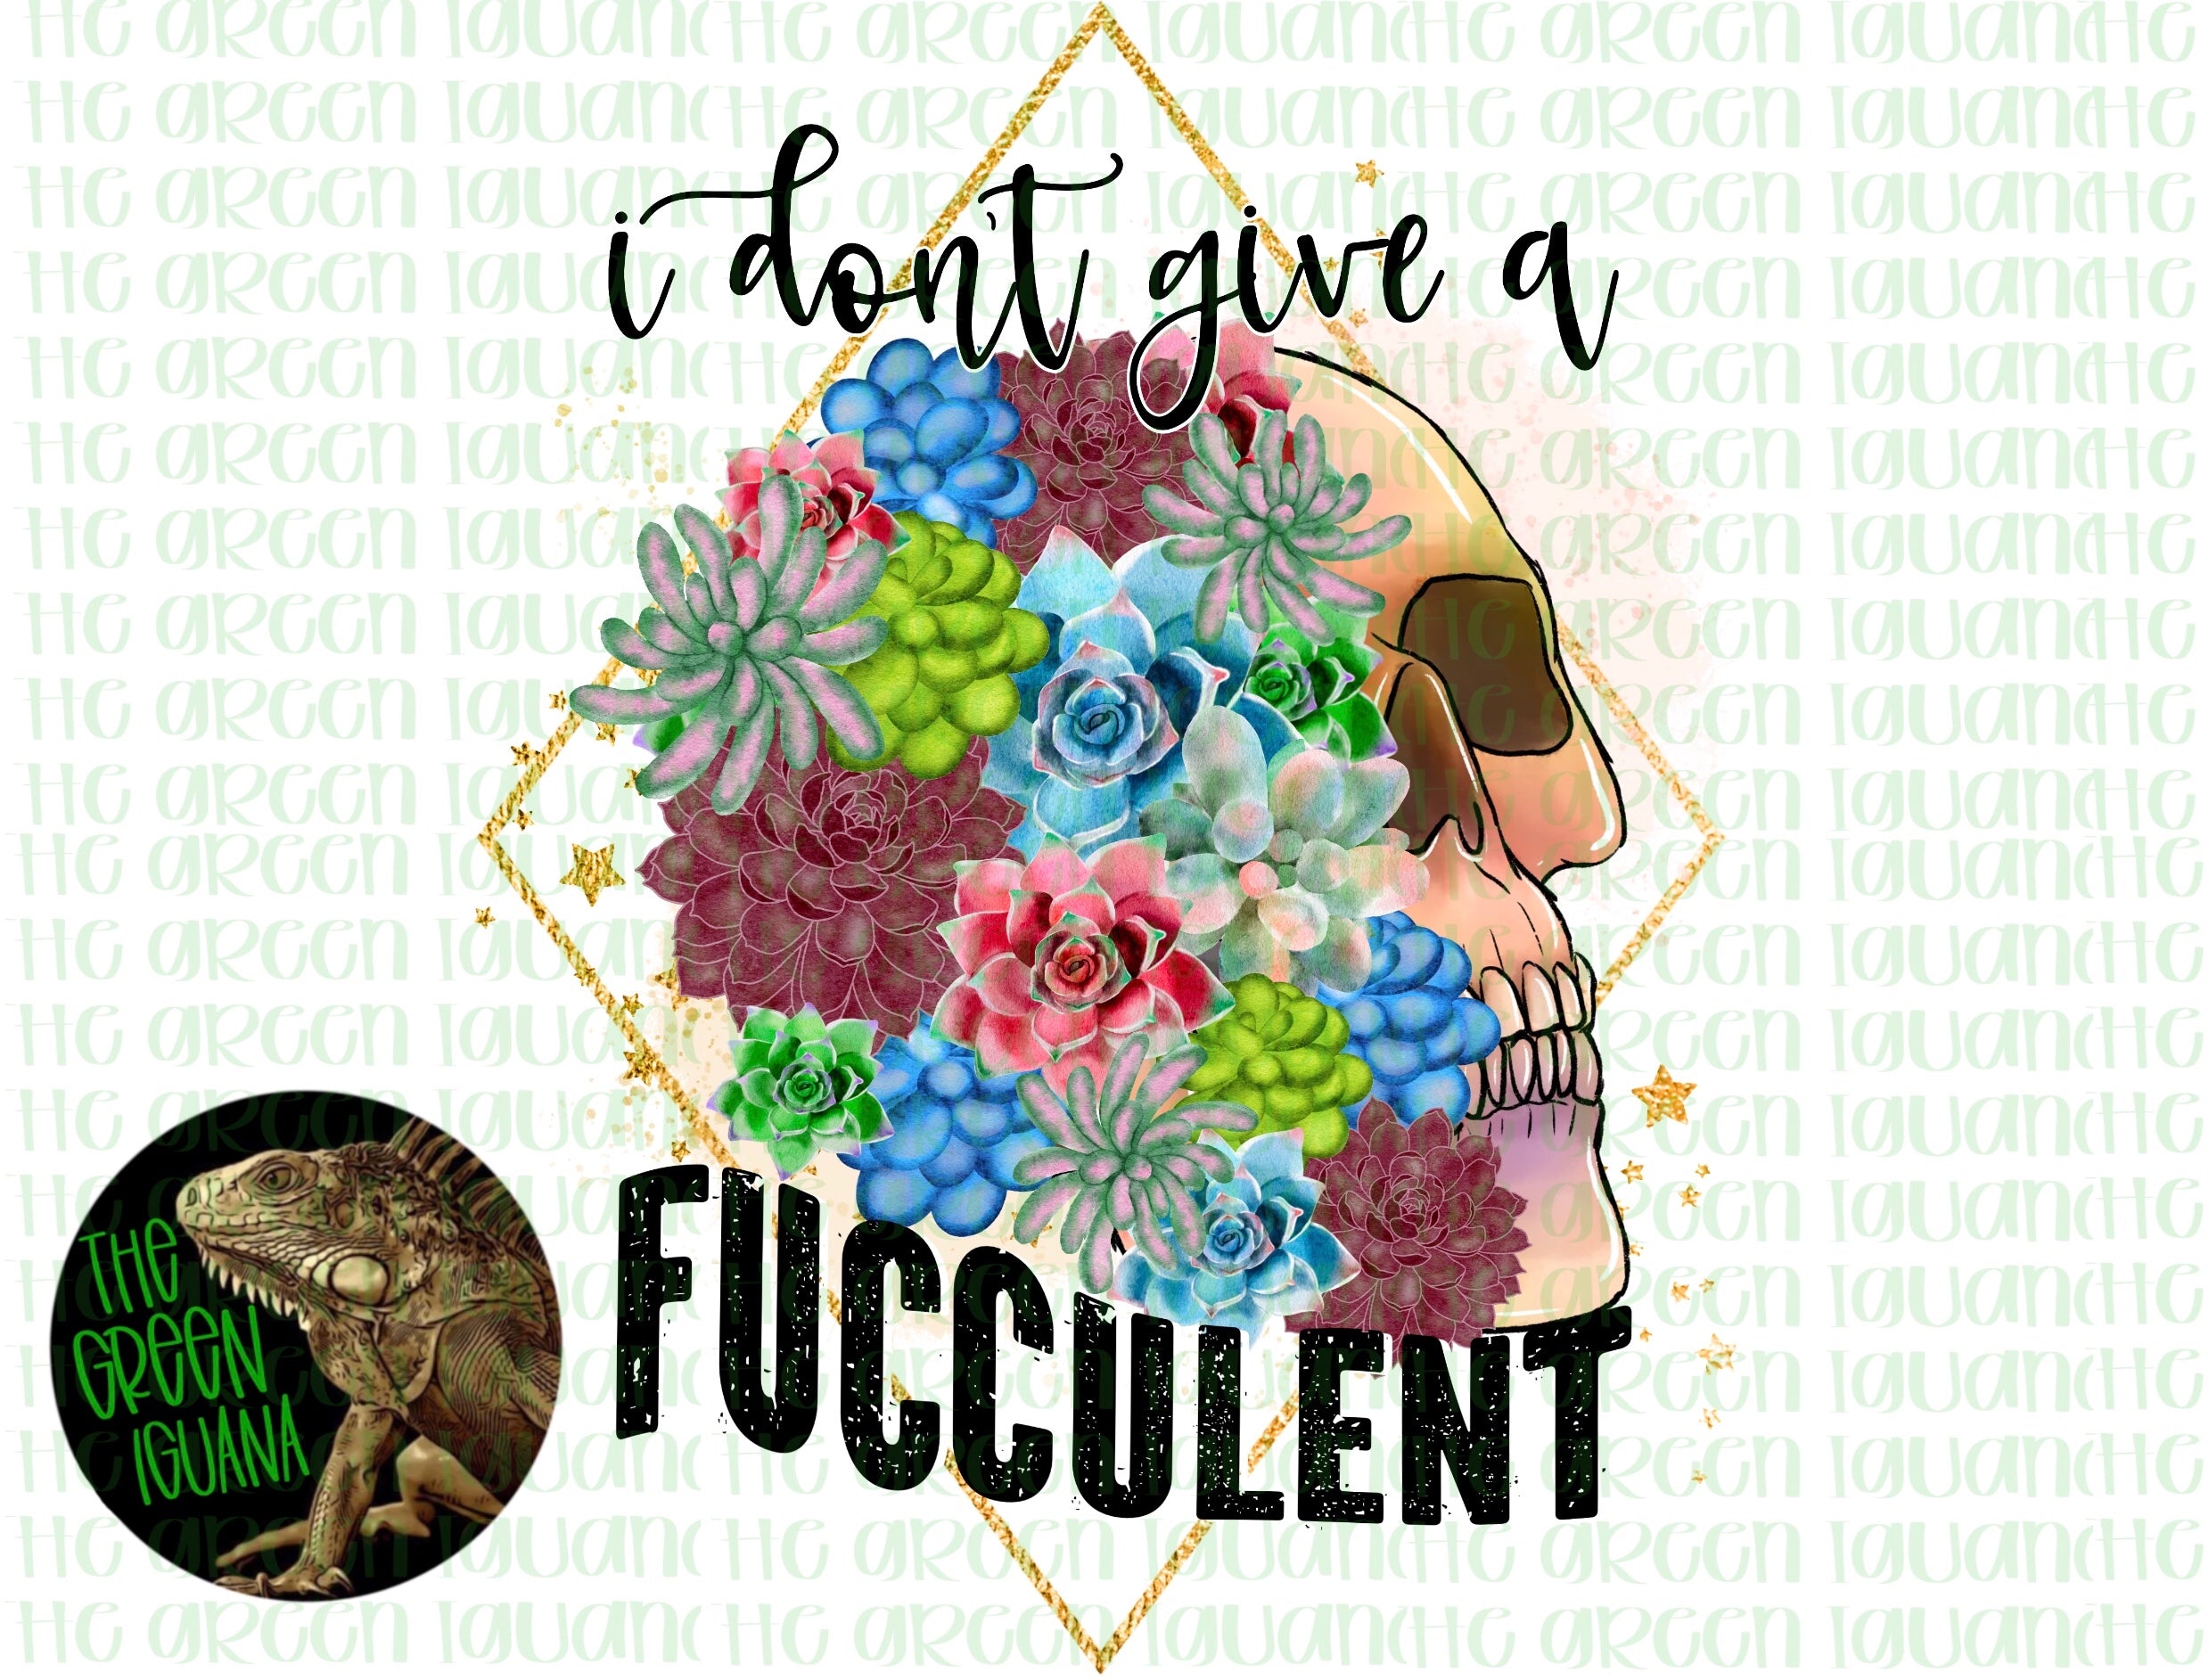 I don’t give a fucculent - DIGITAL